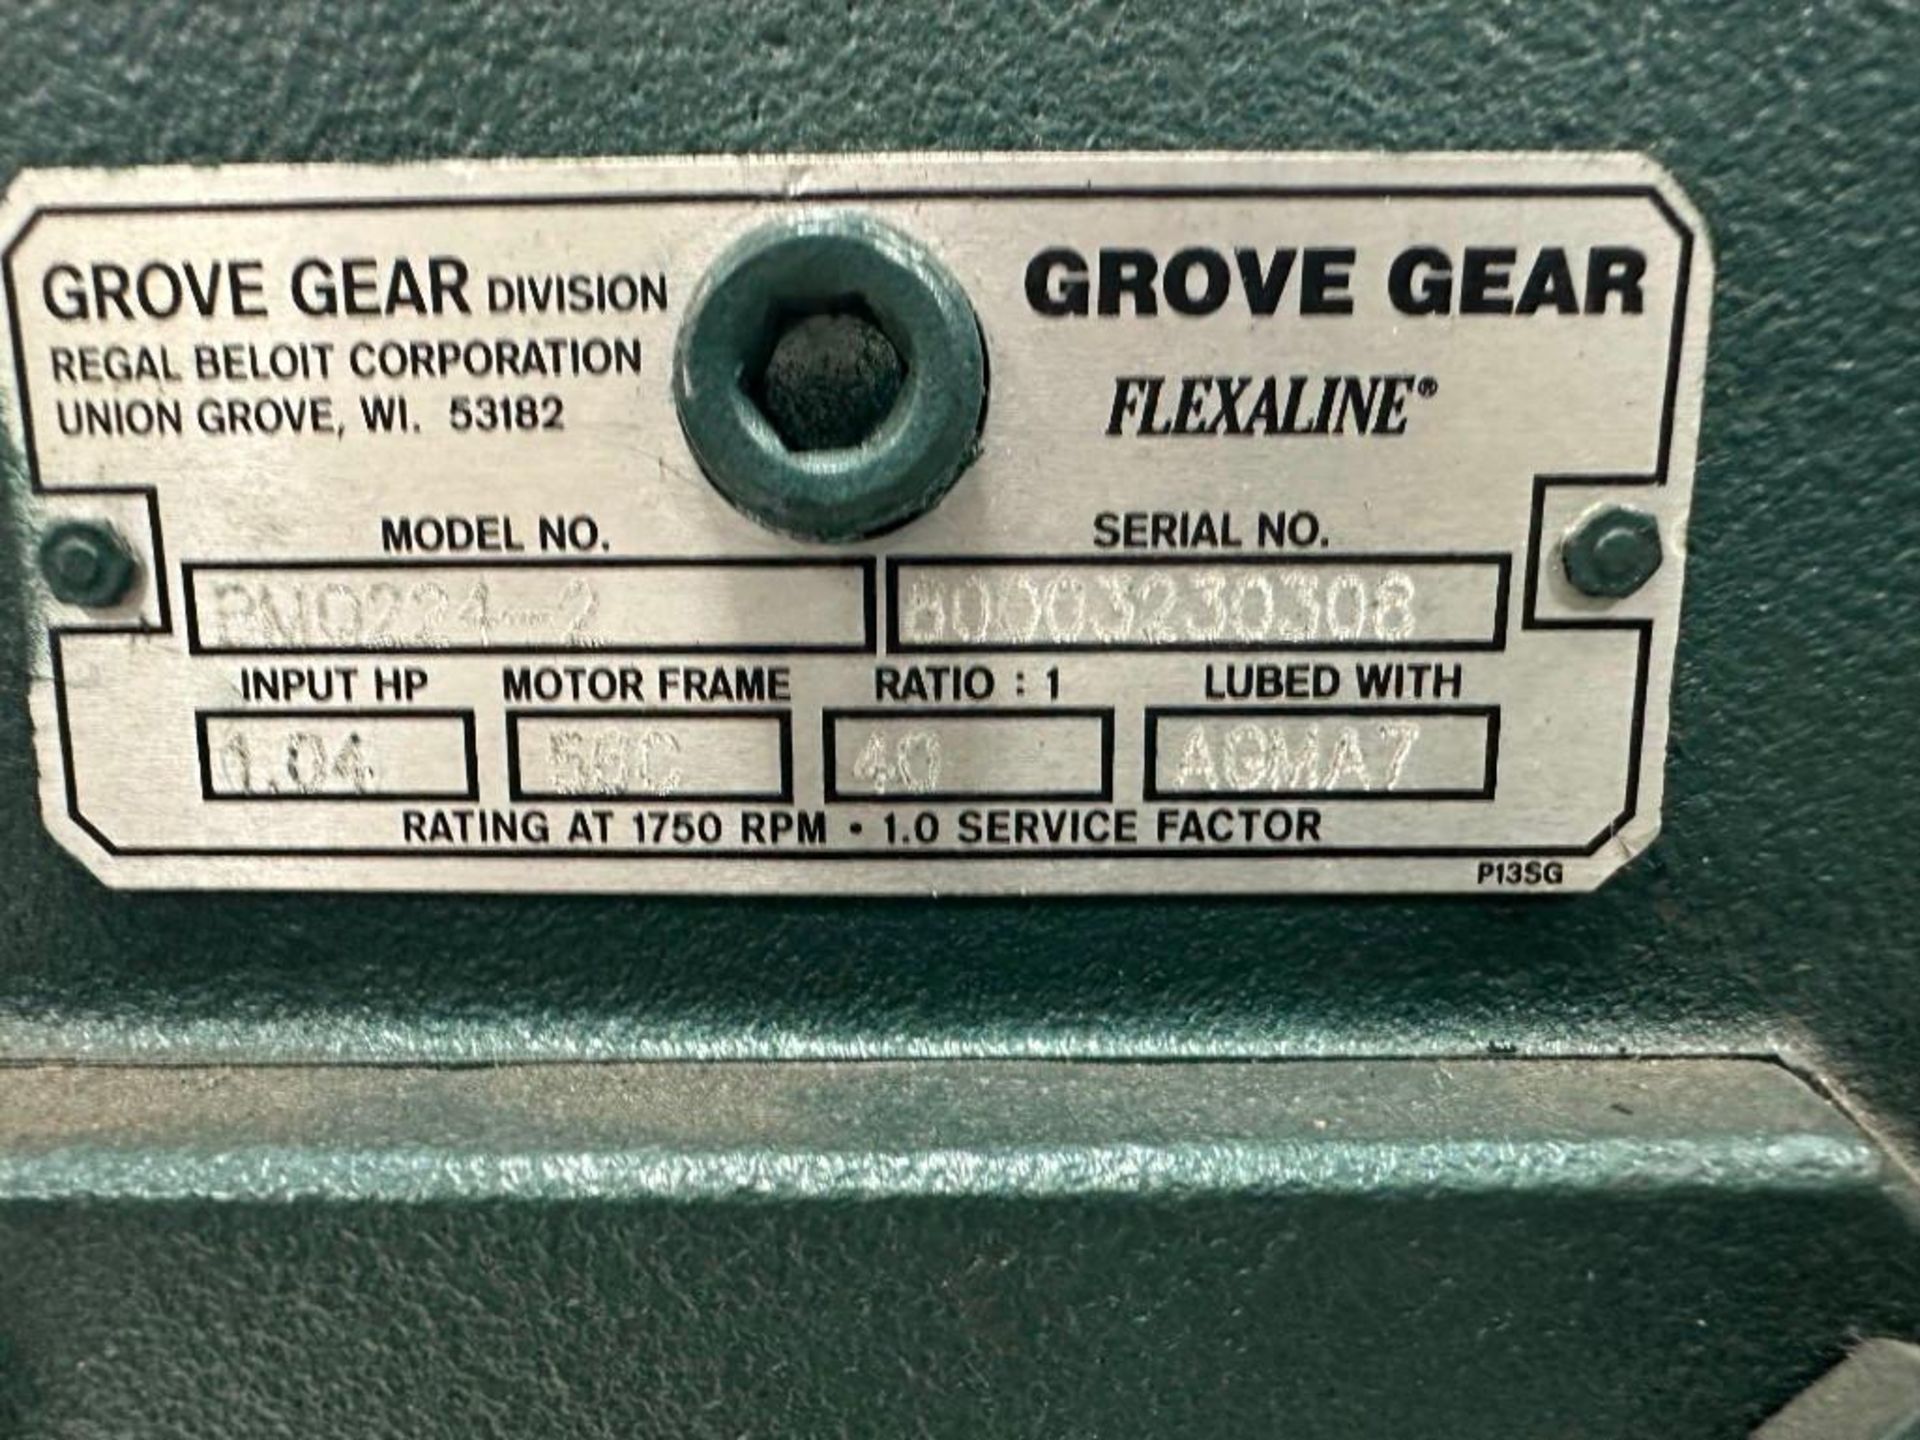 Regal Beloit #BM0224-2 Grove Gear Flexaline Motor - Image 5 of 6